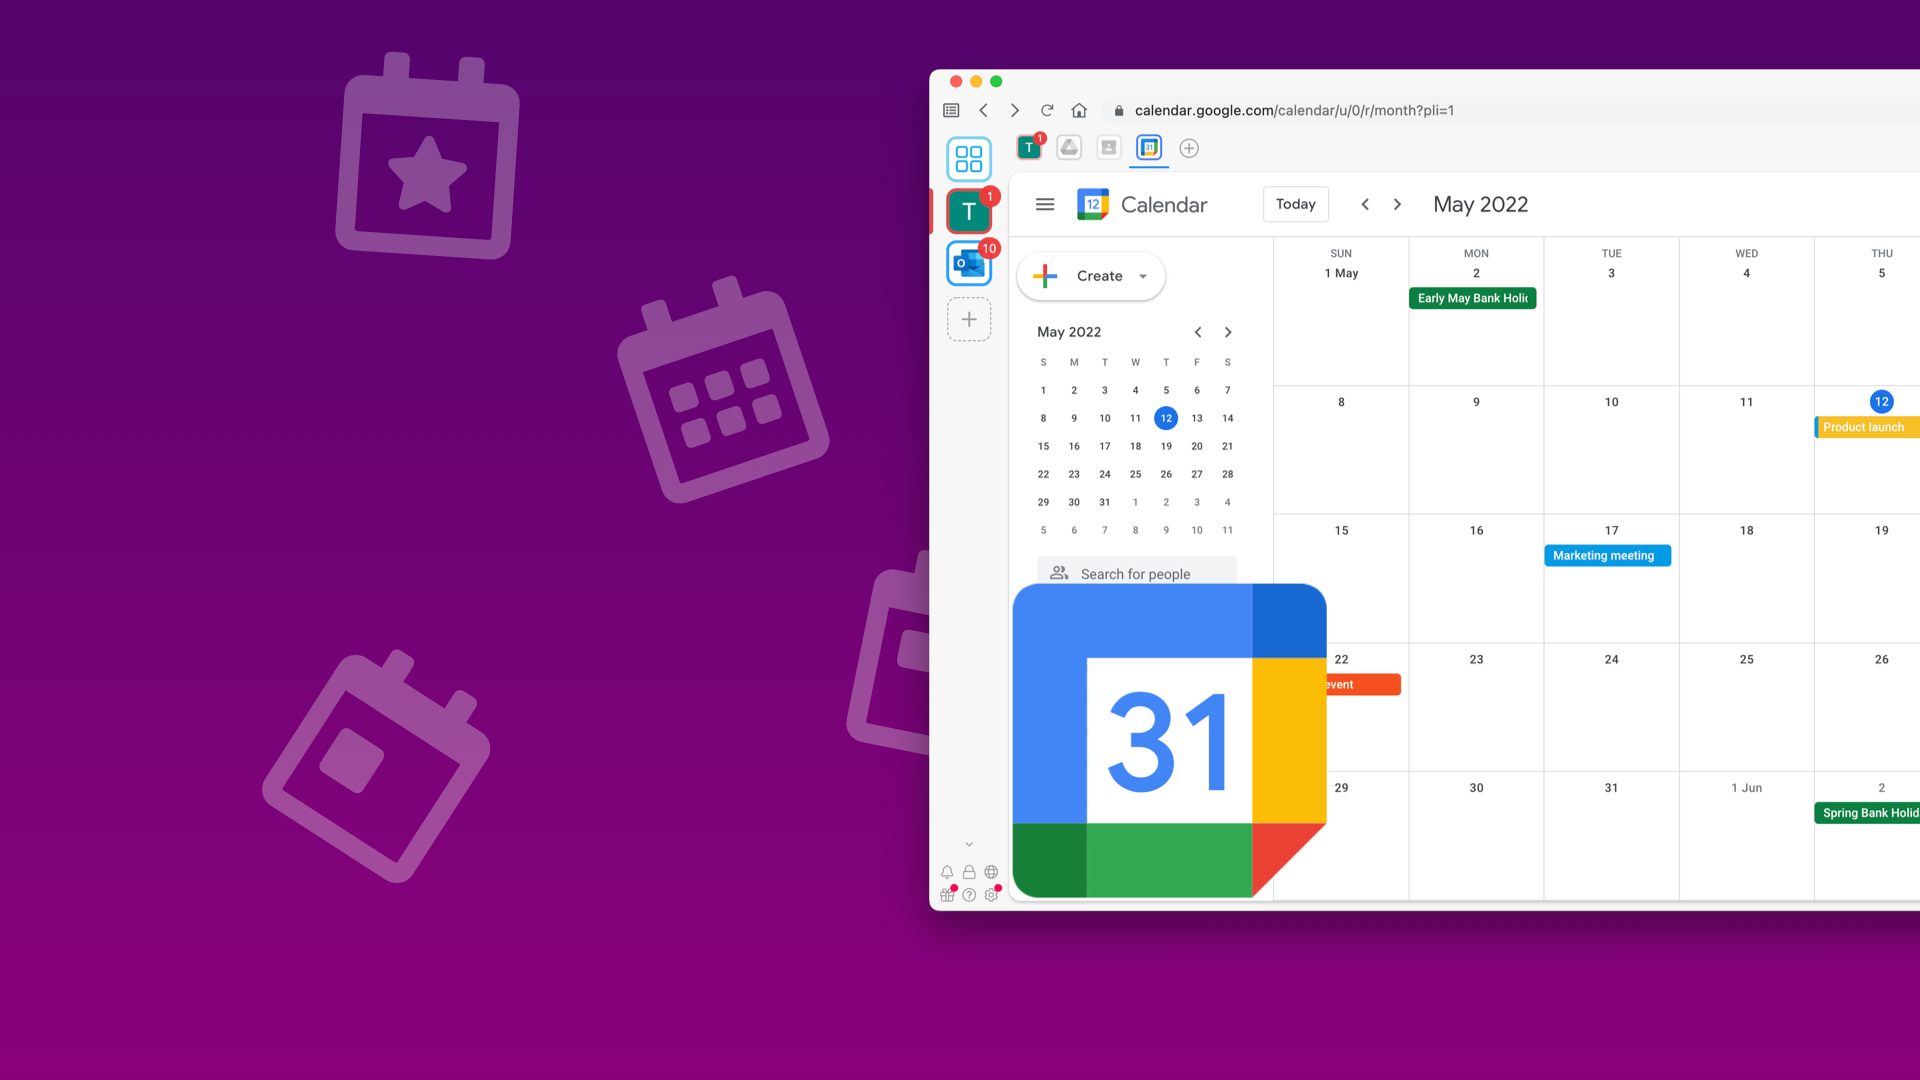 Ứng dụng Google Calendar trên Desktop mang lại sự tiện lợi với giao diện đơn giản và những tính năng quan trọng như chia sẻ lịch và nhắc lịch. Bạn sẽ có thể quản lý và cập nhật lịch trình của mình một cách dễ dàng. Click để khám phá hình ảnh liên quan đến Ứng dụng Google Calendar trên Desktop!